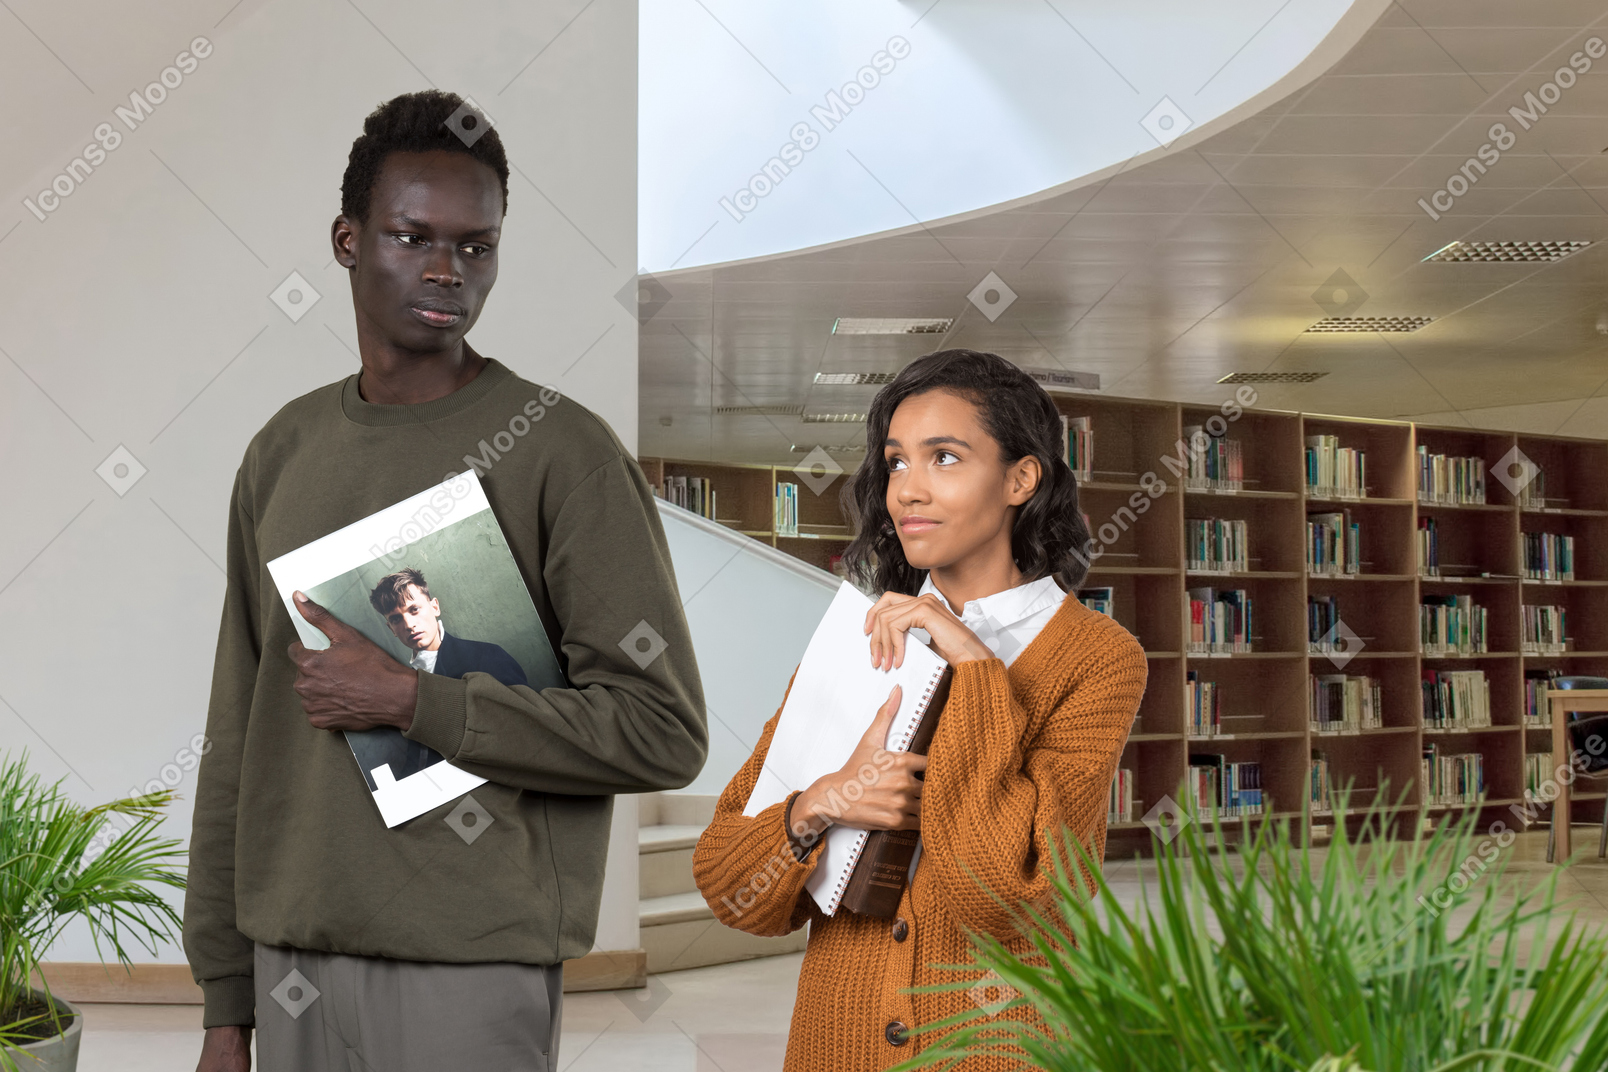 Una mujer negra modestamente vestida con libros en sus manos, mira amorosamente al hombre negro serio en la biblioteca, quien no nota su mirada